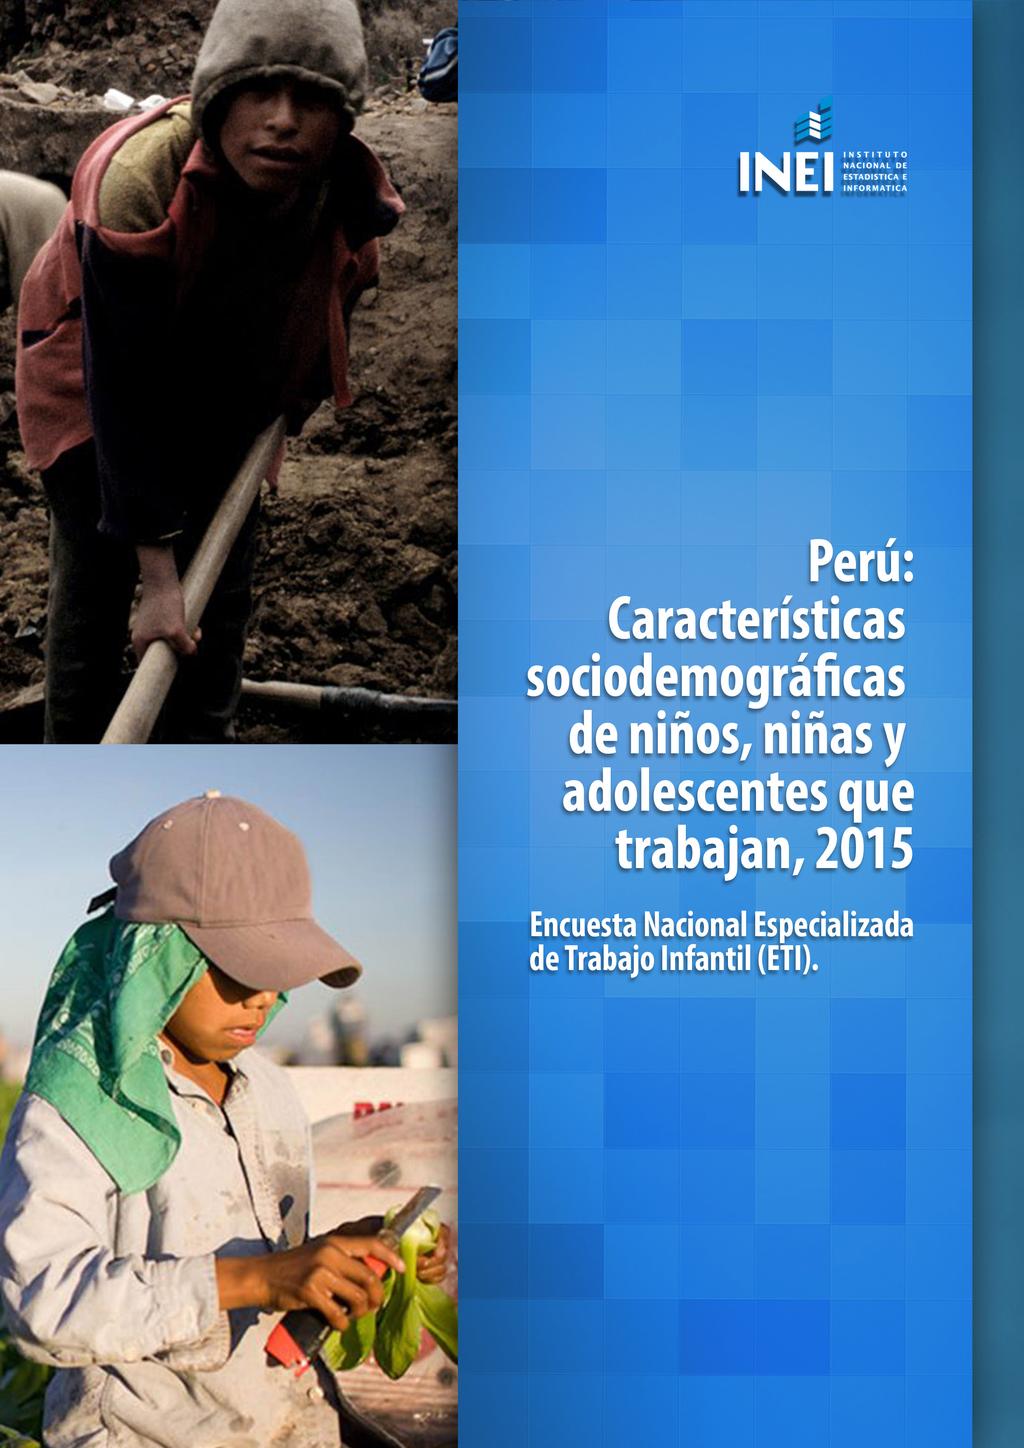 Perú: Características sociodemográficas de niños, niñas y adolescentes que trabajan 2015 Perú: Características